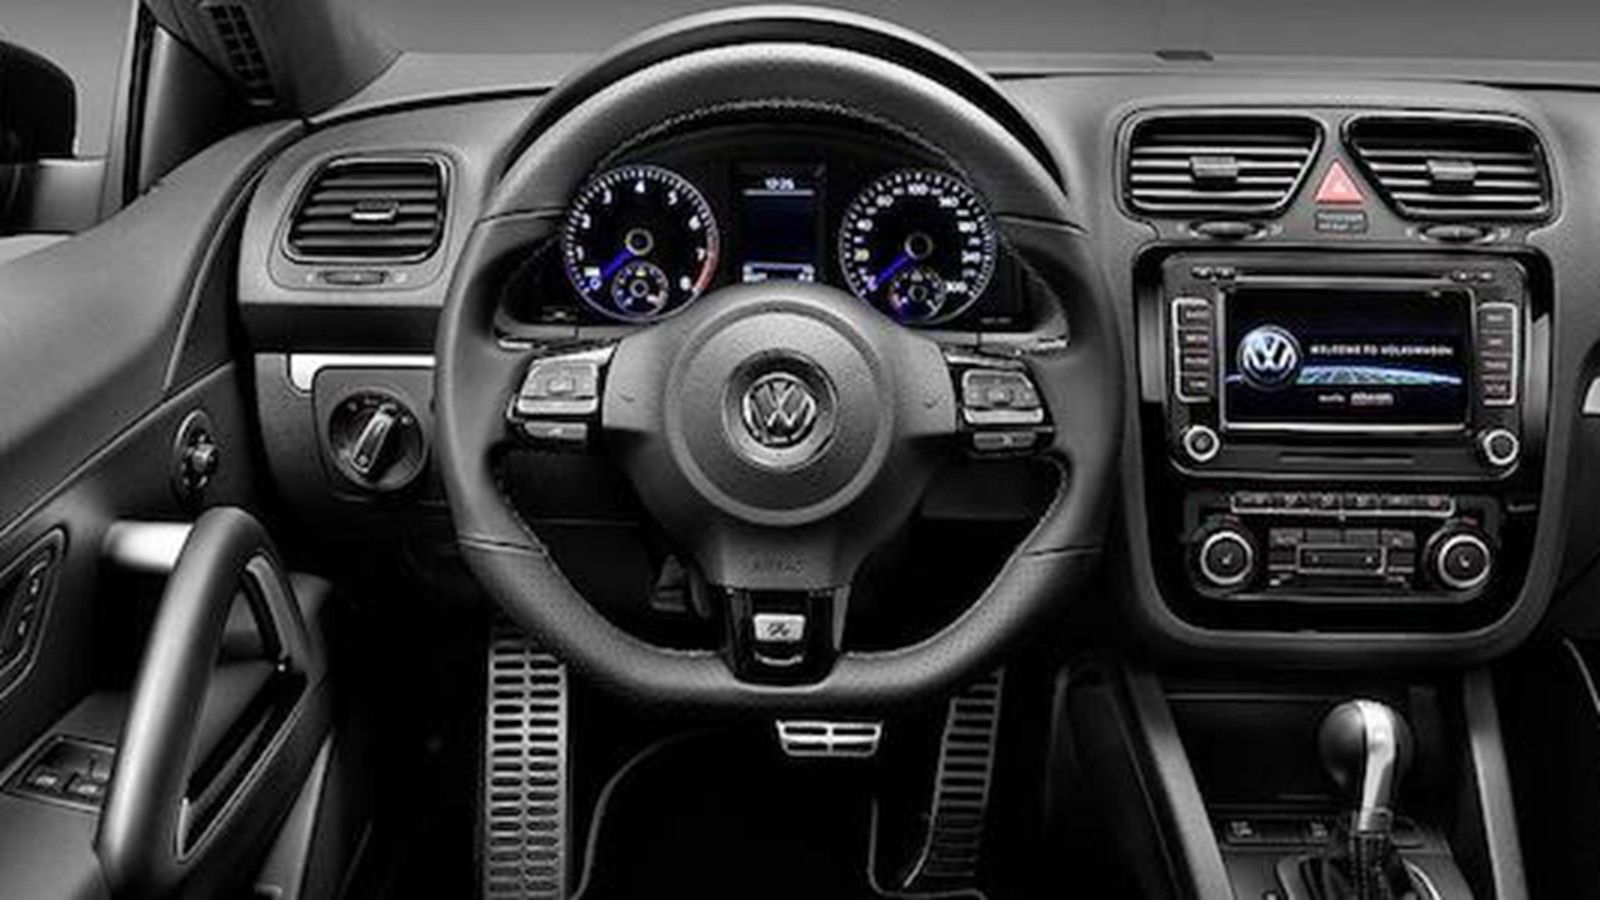 2021 Volkswagen Scirocco 1.4TSI Interior 002